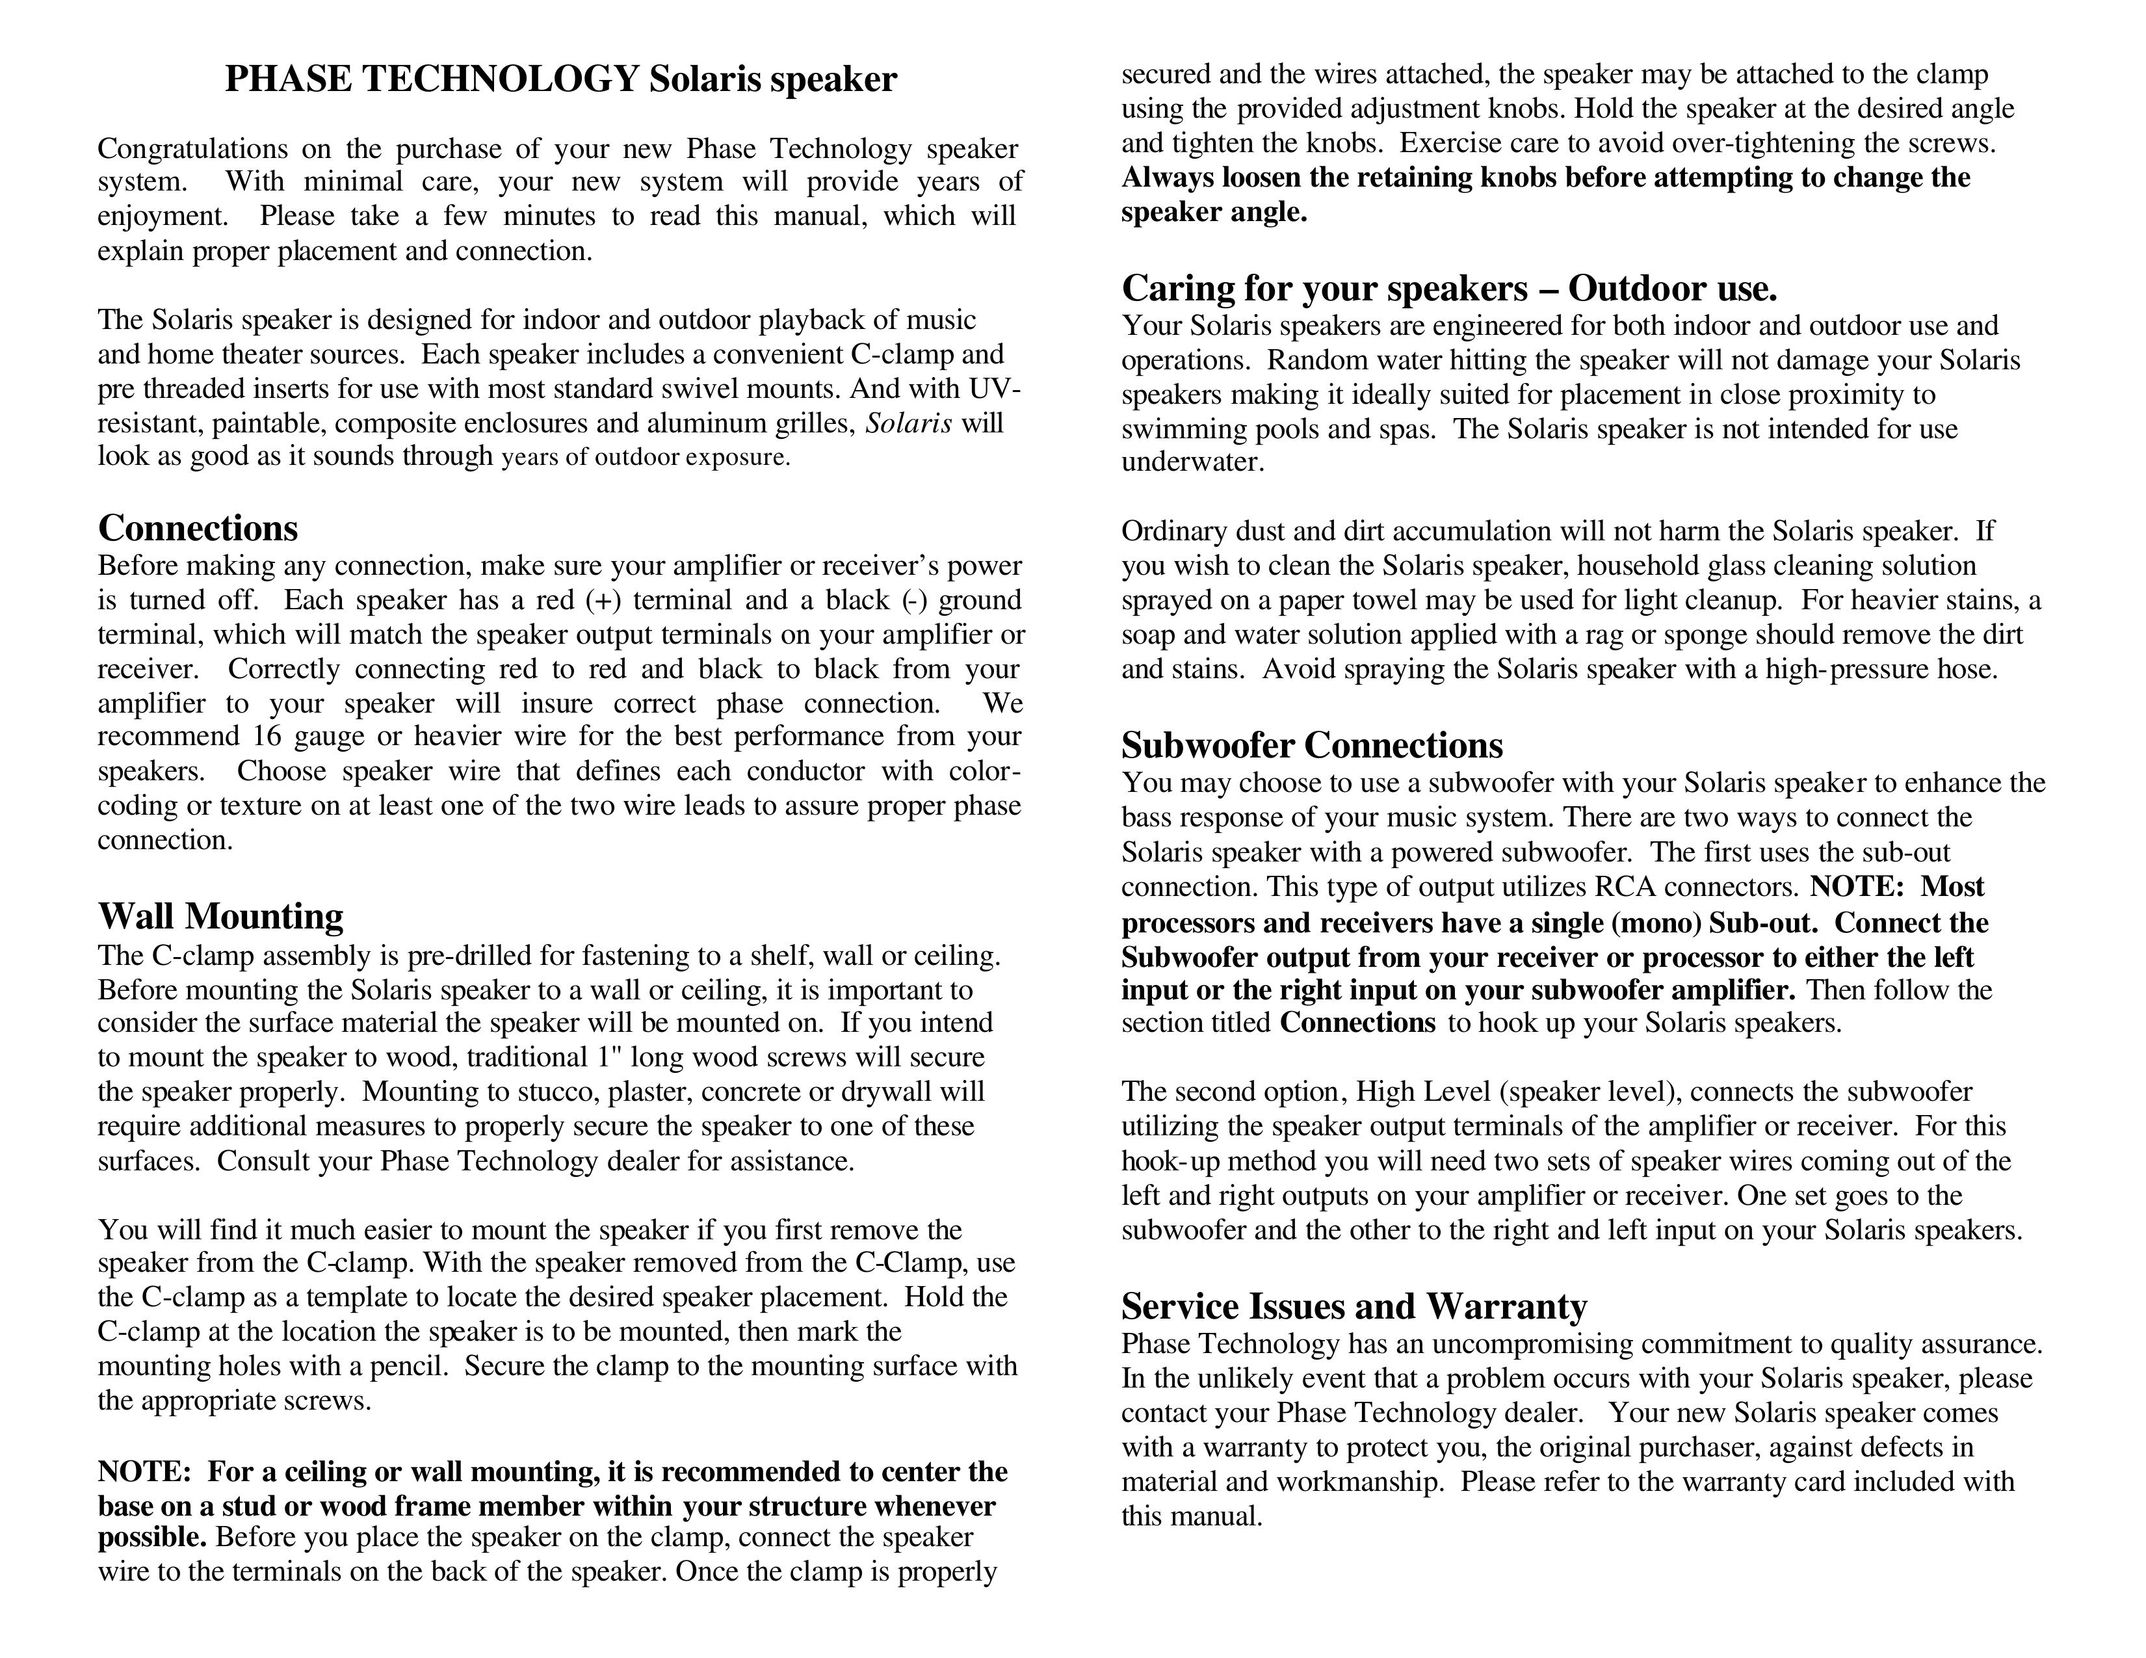 Phase Technology SPF 25 Portable Speaker User Manual